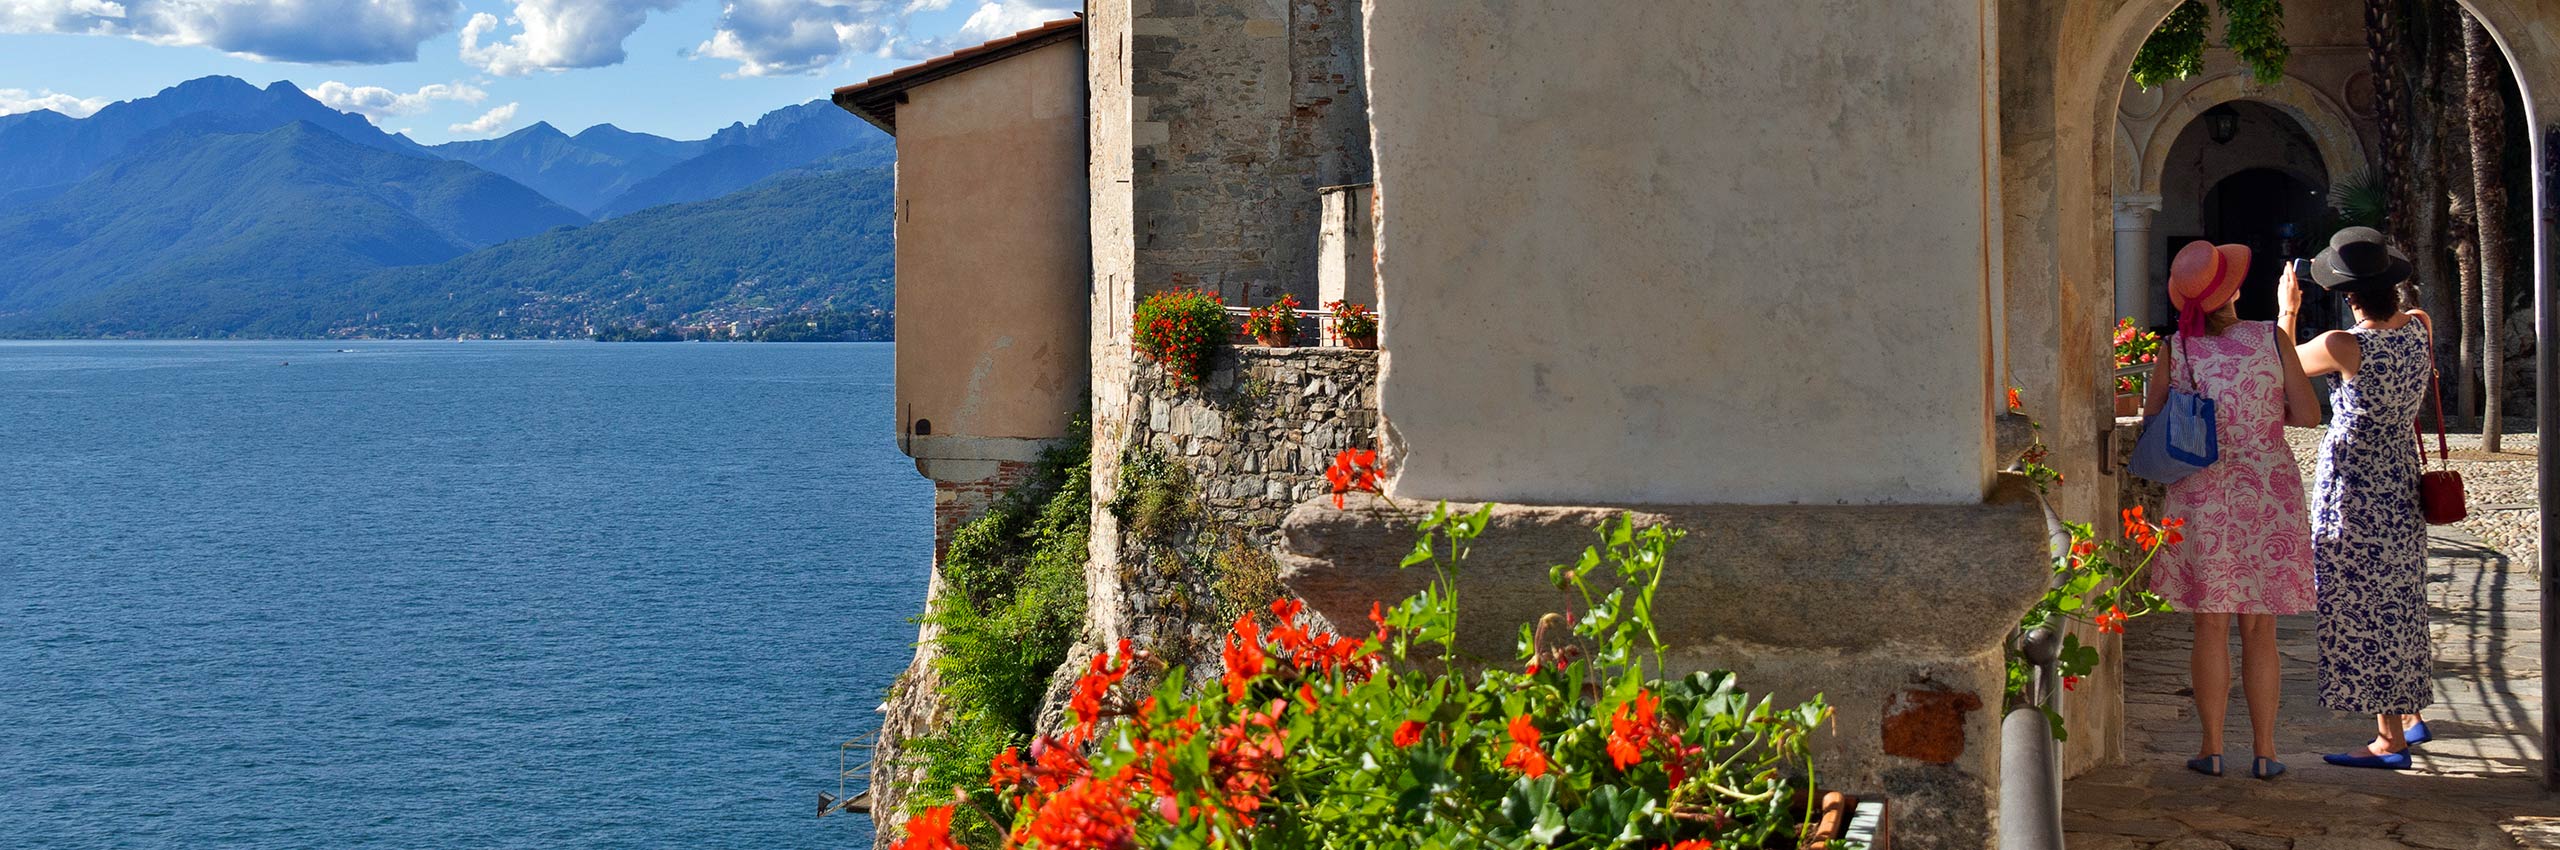 FCR-1213680 | Italy/Lombardy, Varese district, Lake Maggiore, Leggiuno | © Monica Goslin/4Corners